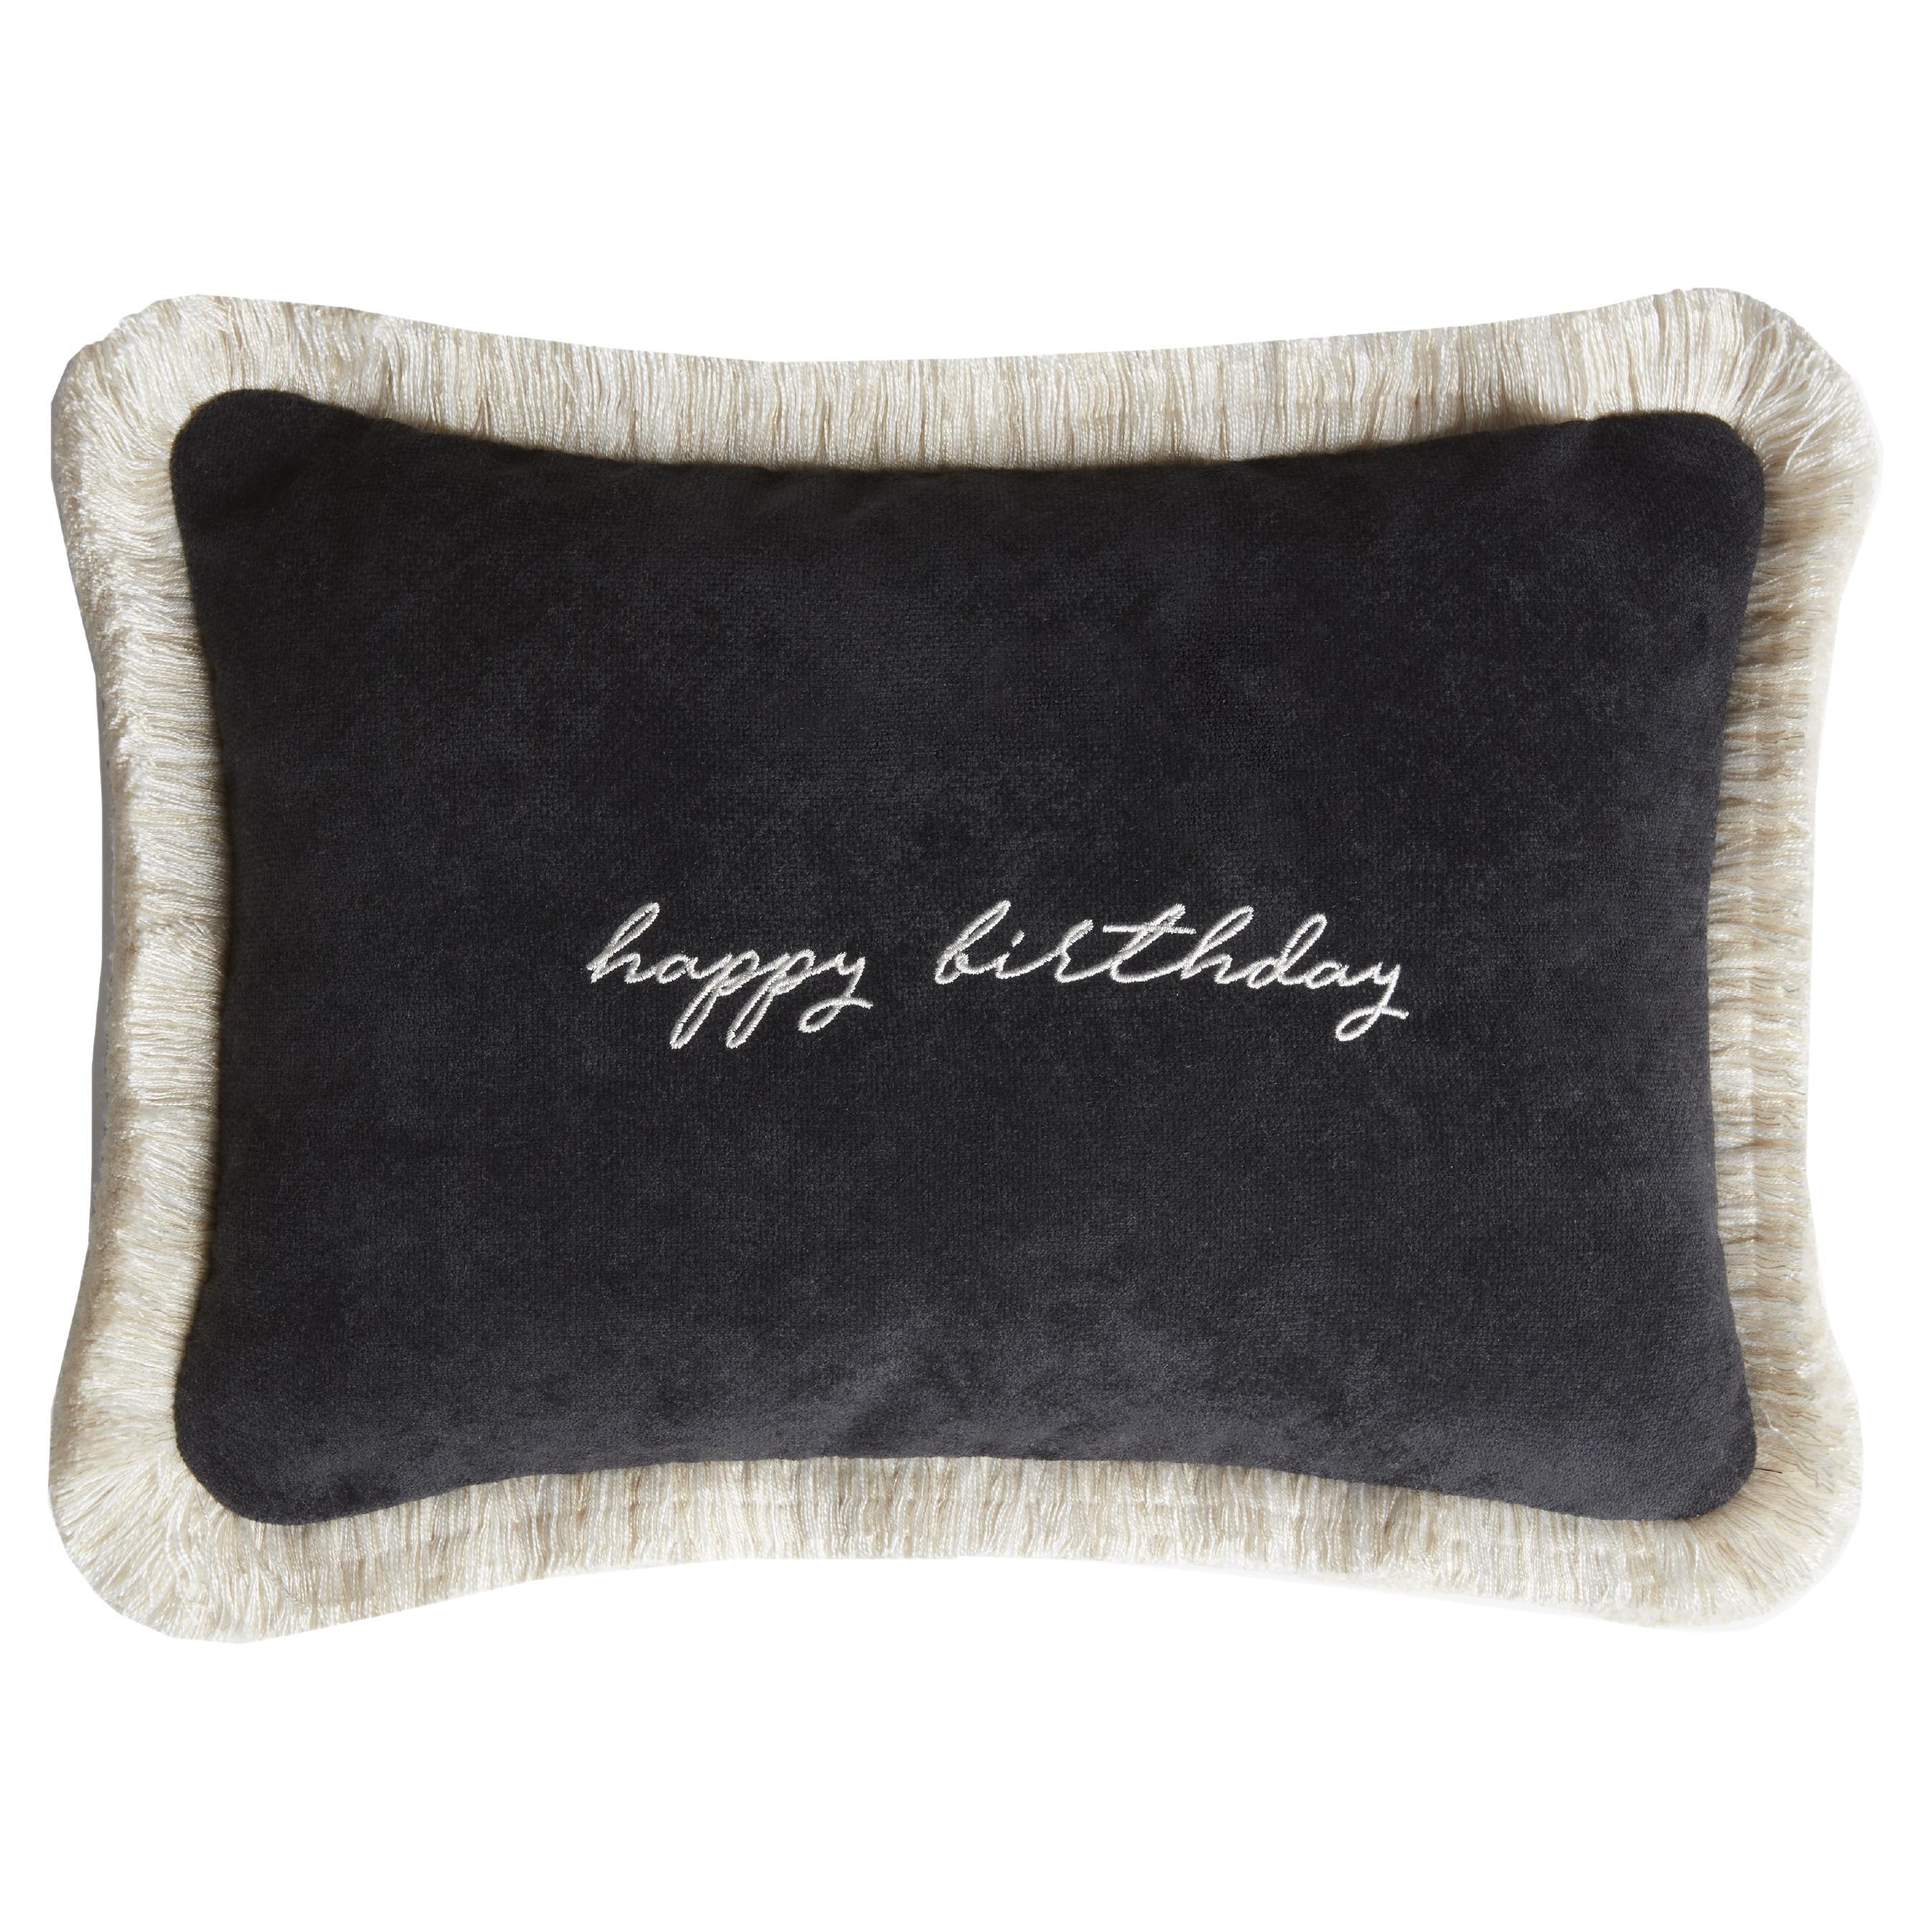 Happy Birthday Cushion Black Velvet with White Fringes For Sale